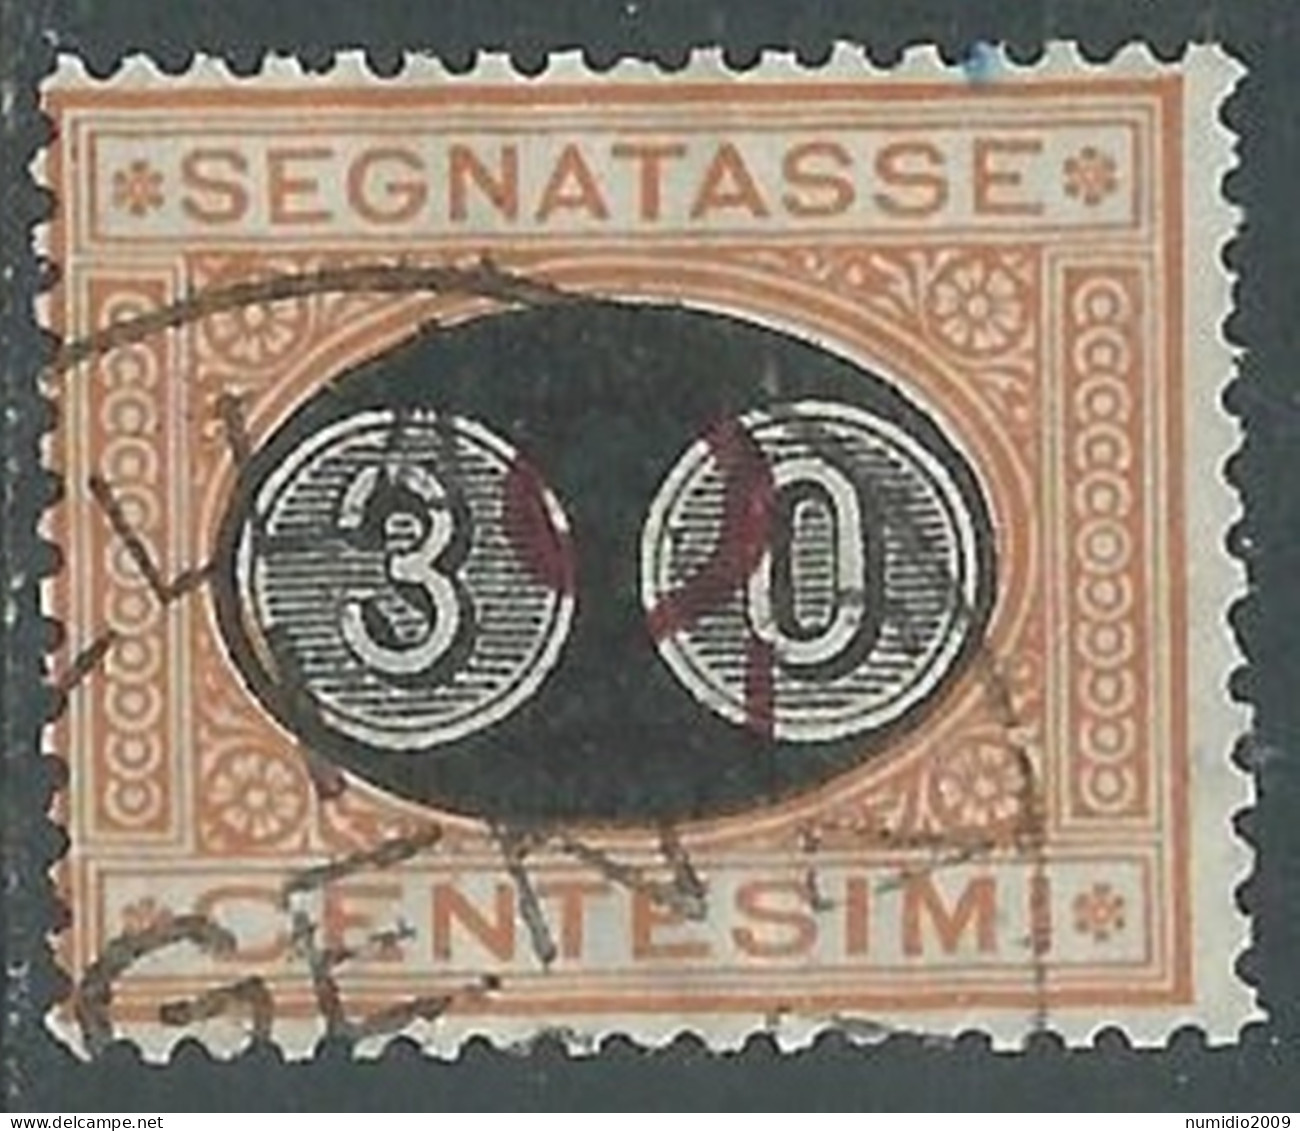 1890-91 REGNO SEGNATASSE USATO SOPRASTAMPATO 30 SU 2 CENT - P13 - Postage Due